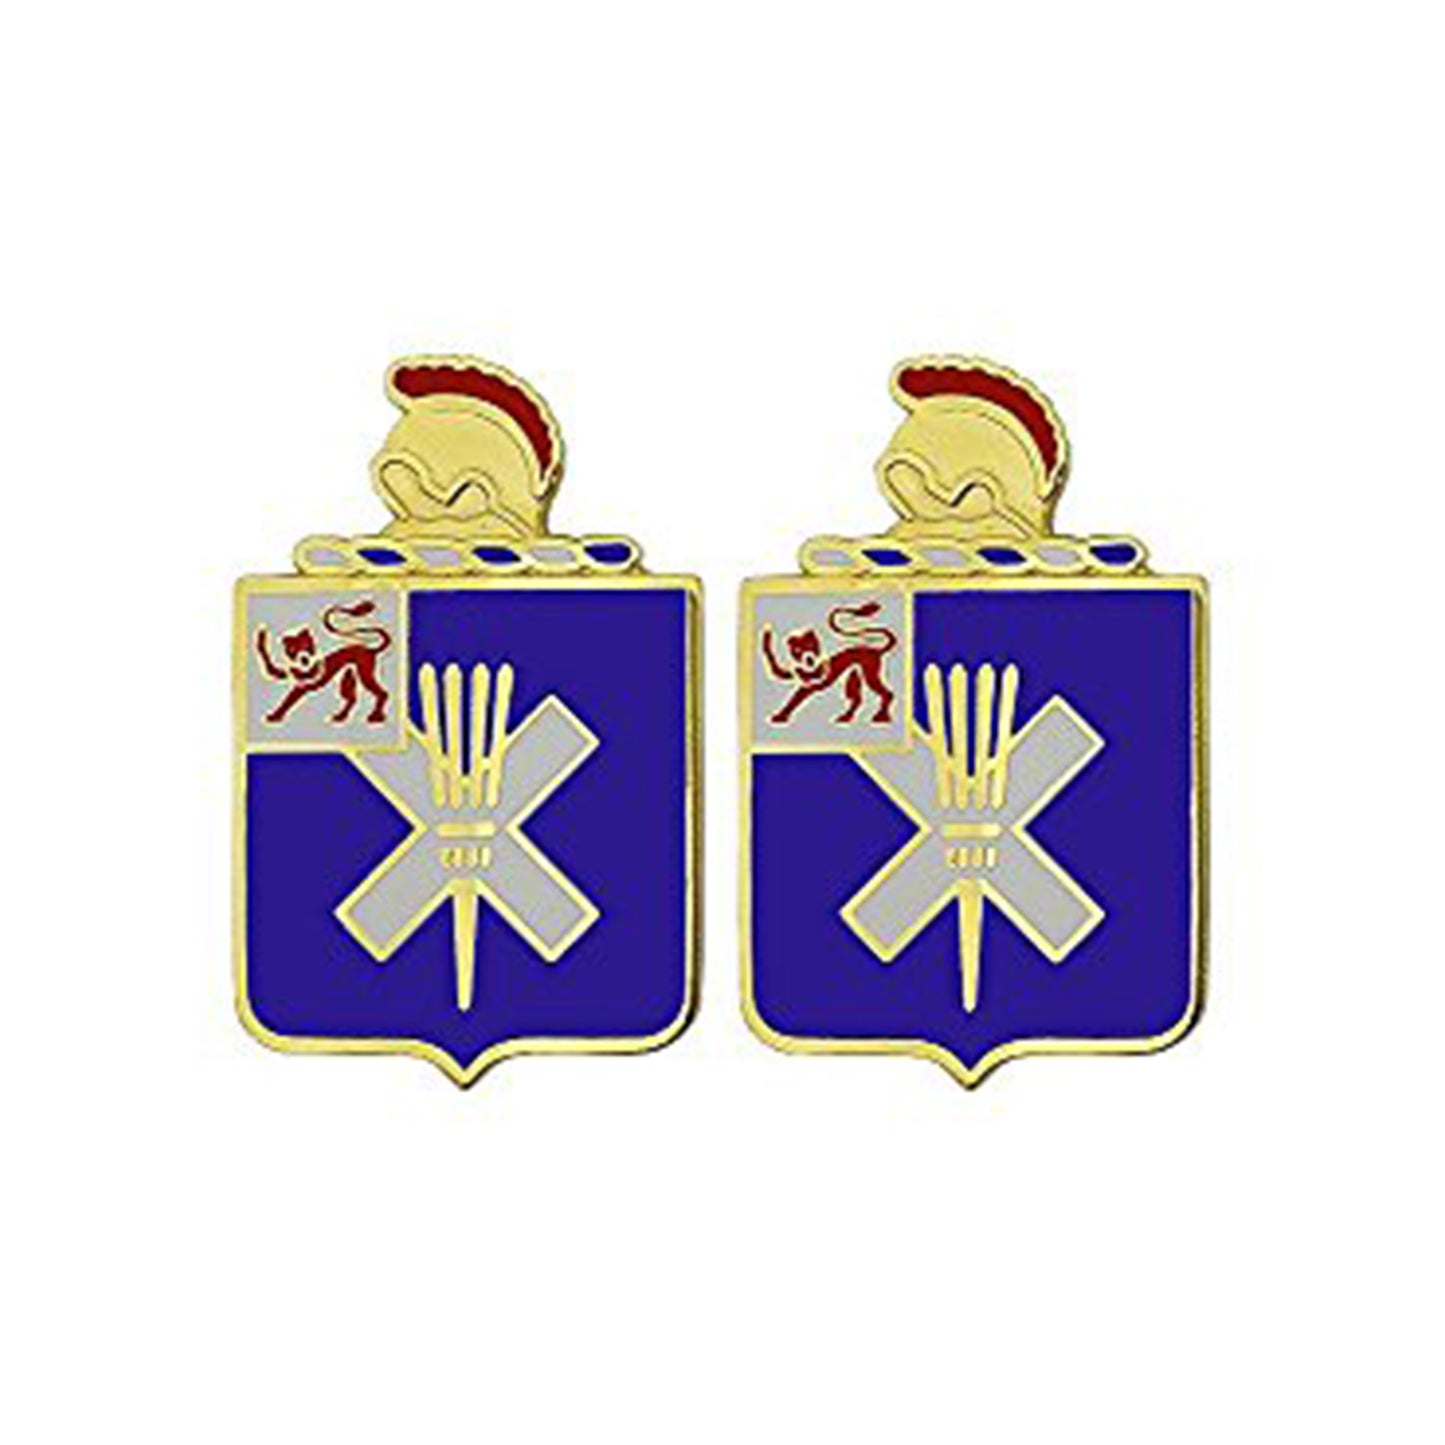 U.S. Army 32nd Infantry Regiment Unit Crest (Pair)